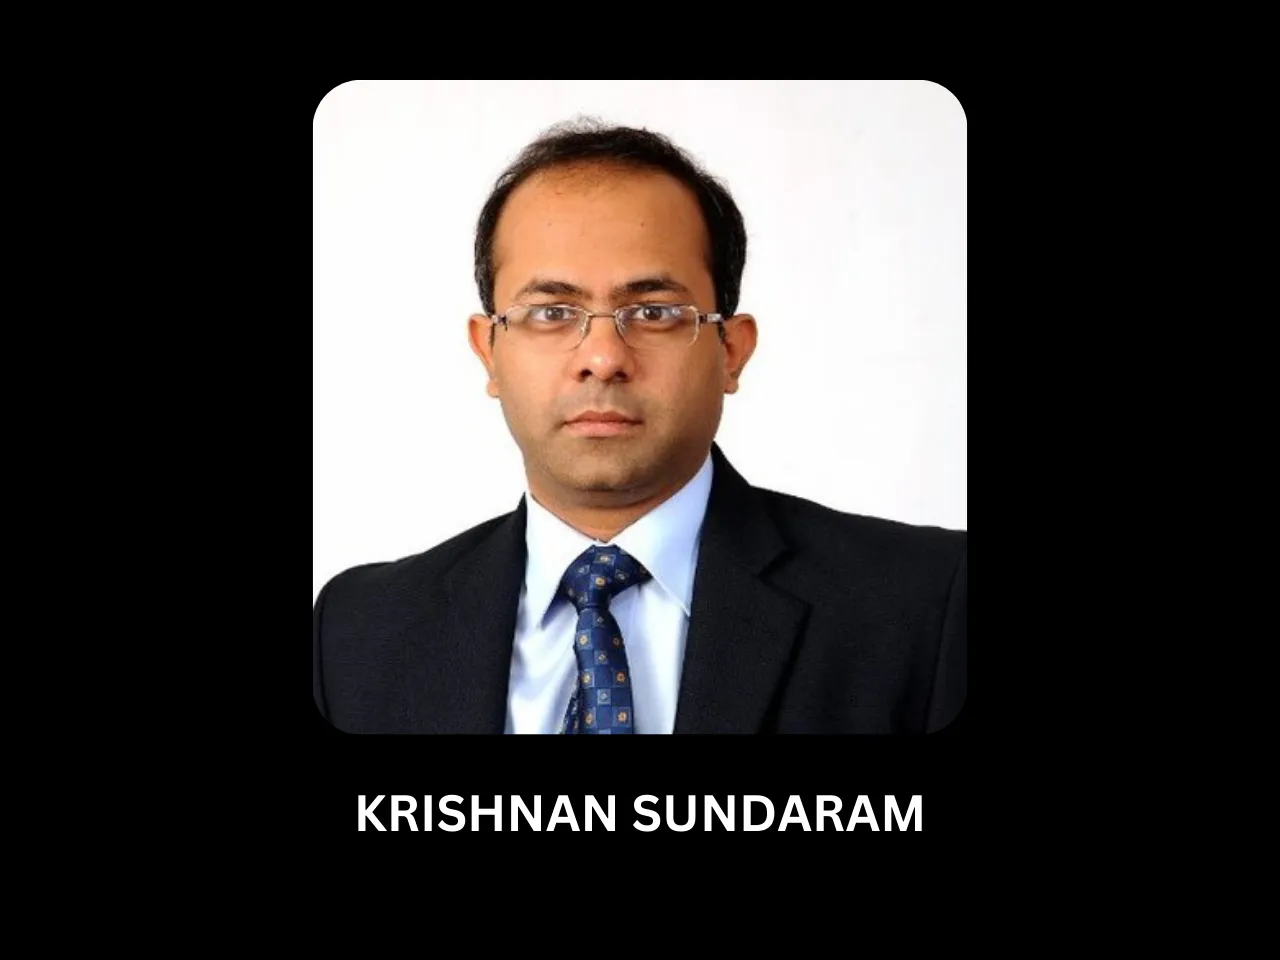 Krishnan Sundaram